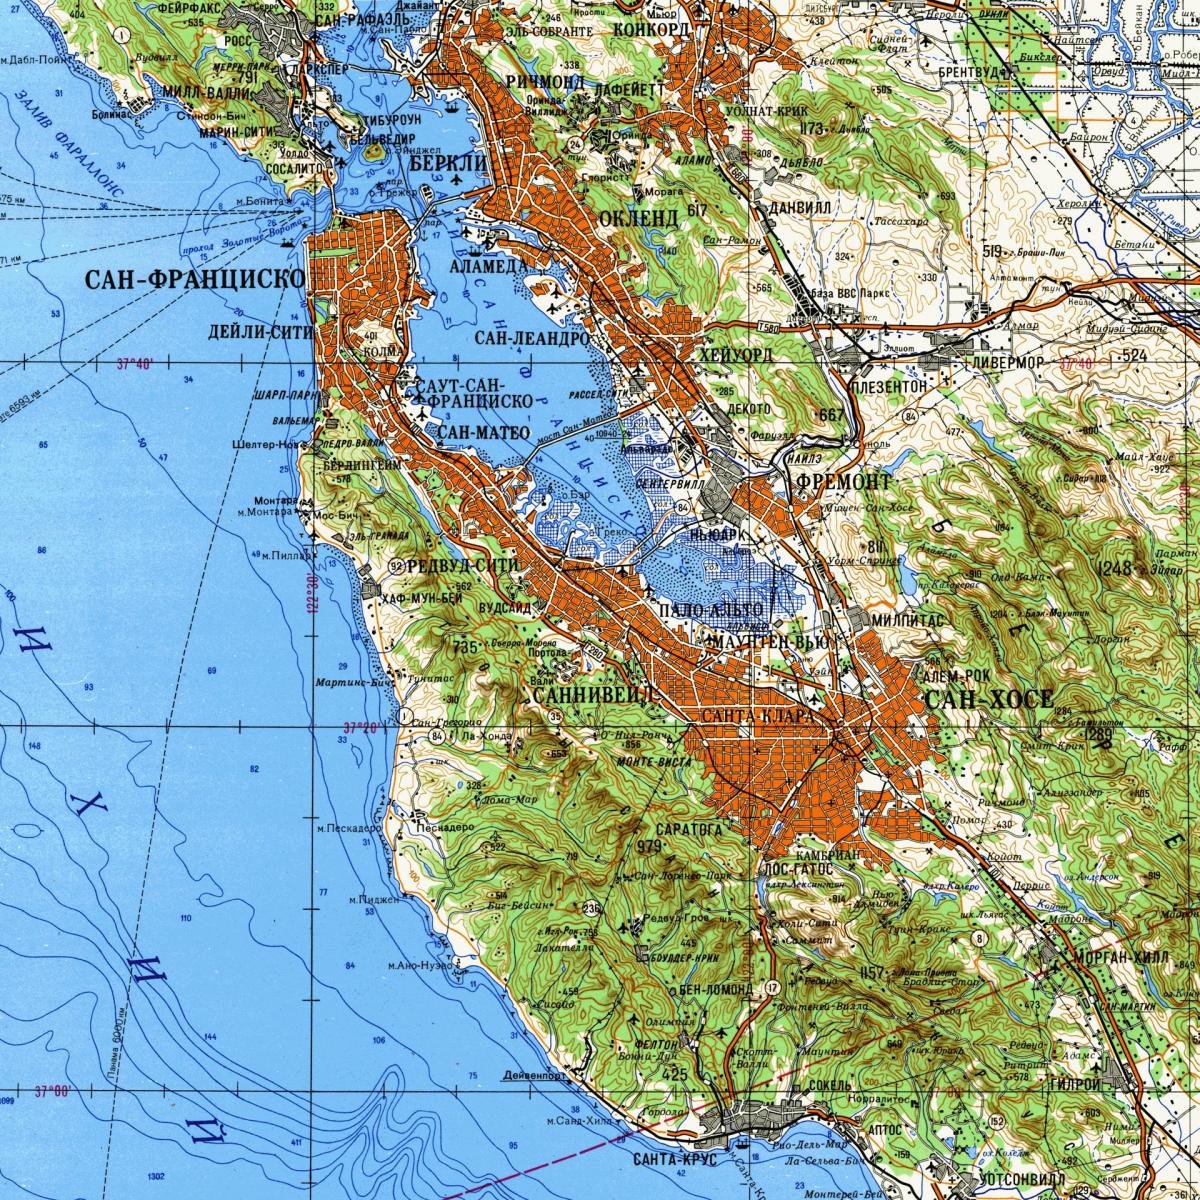 サンフランシスコ-ベイエリアの地形図